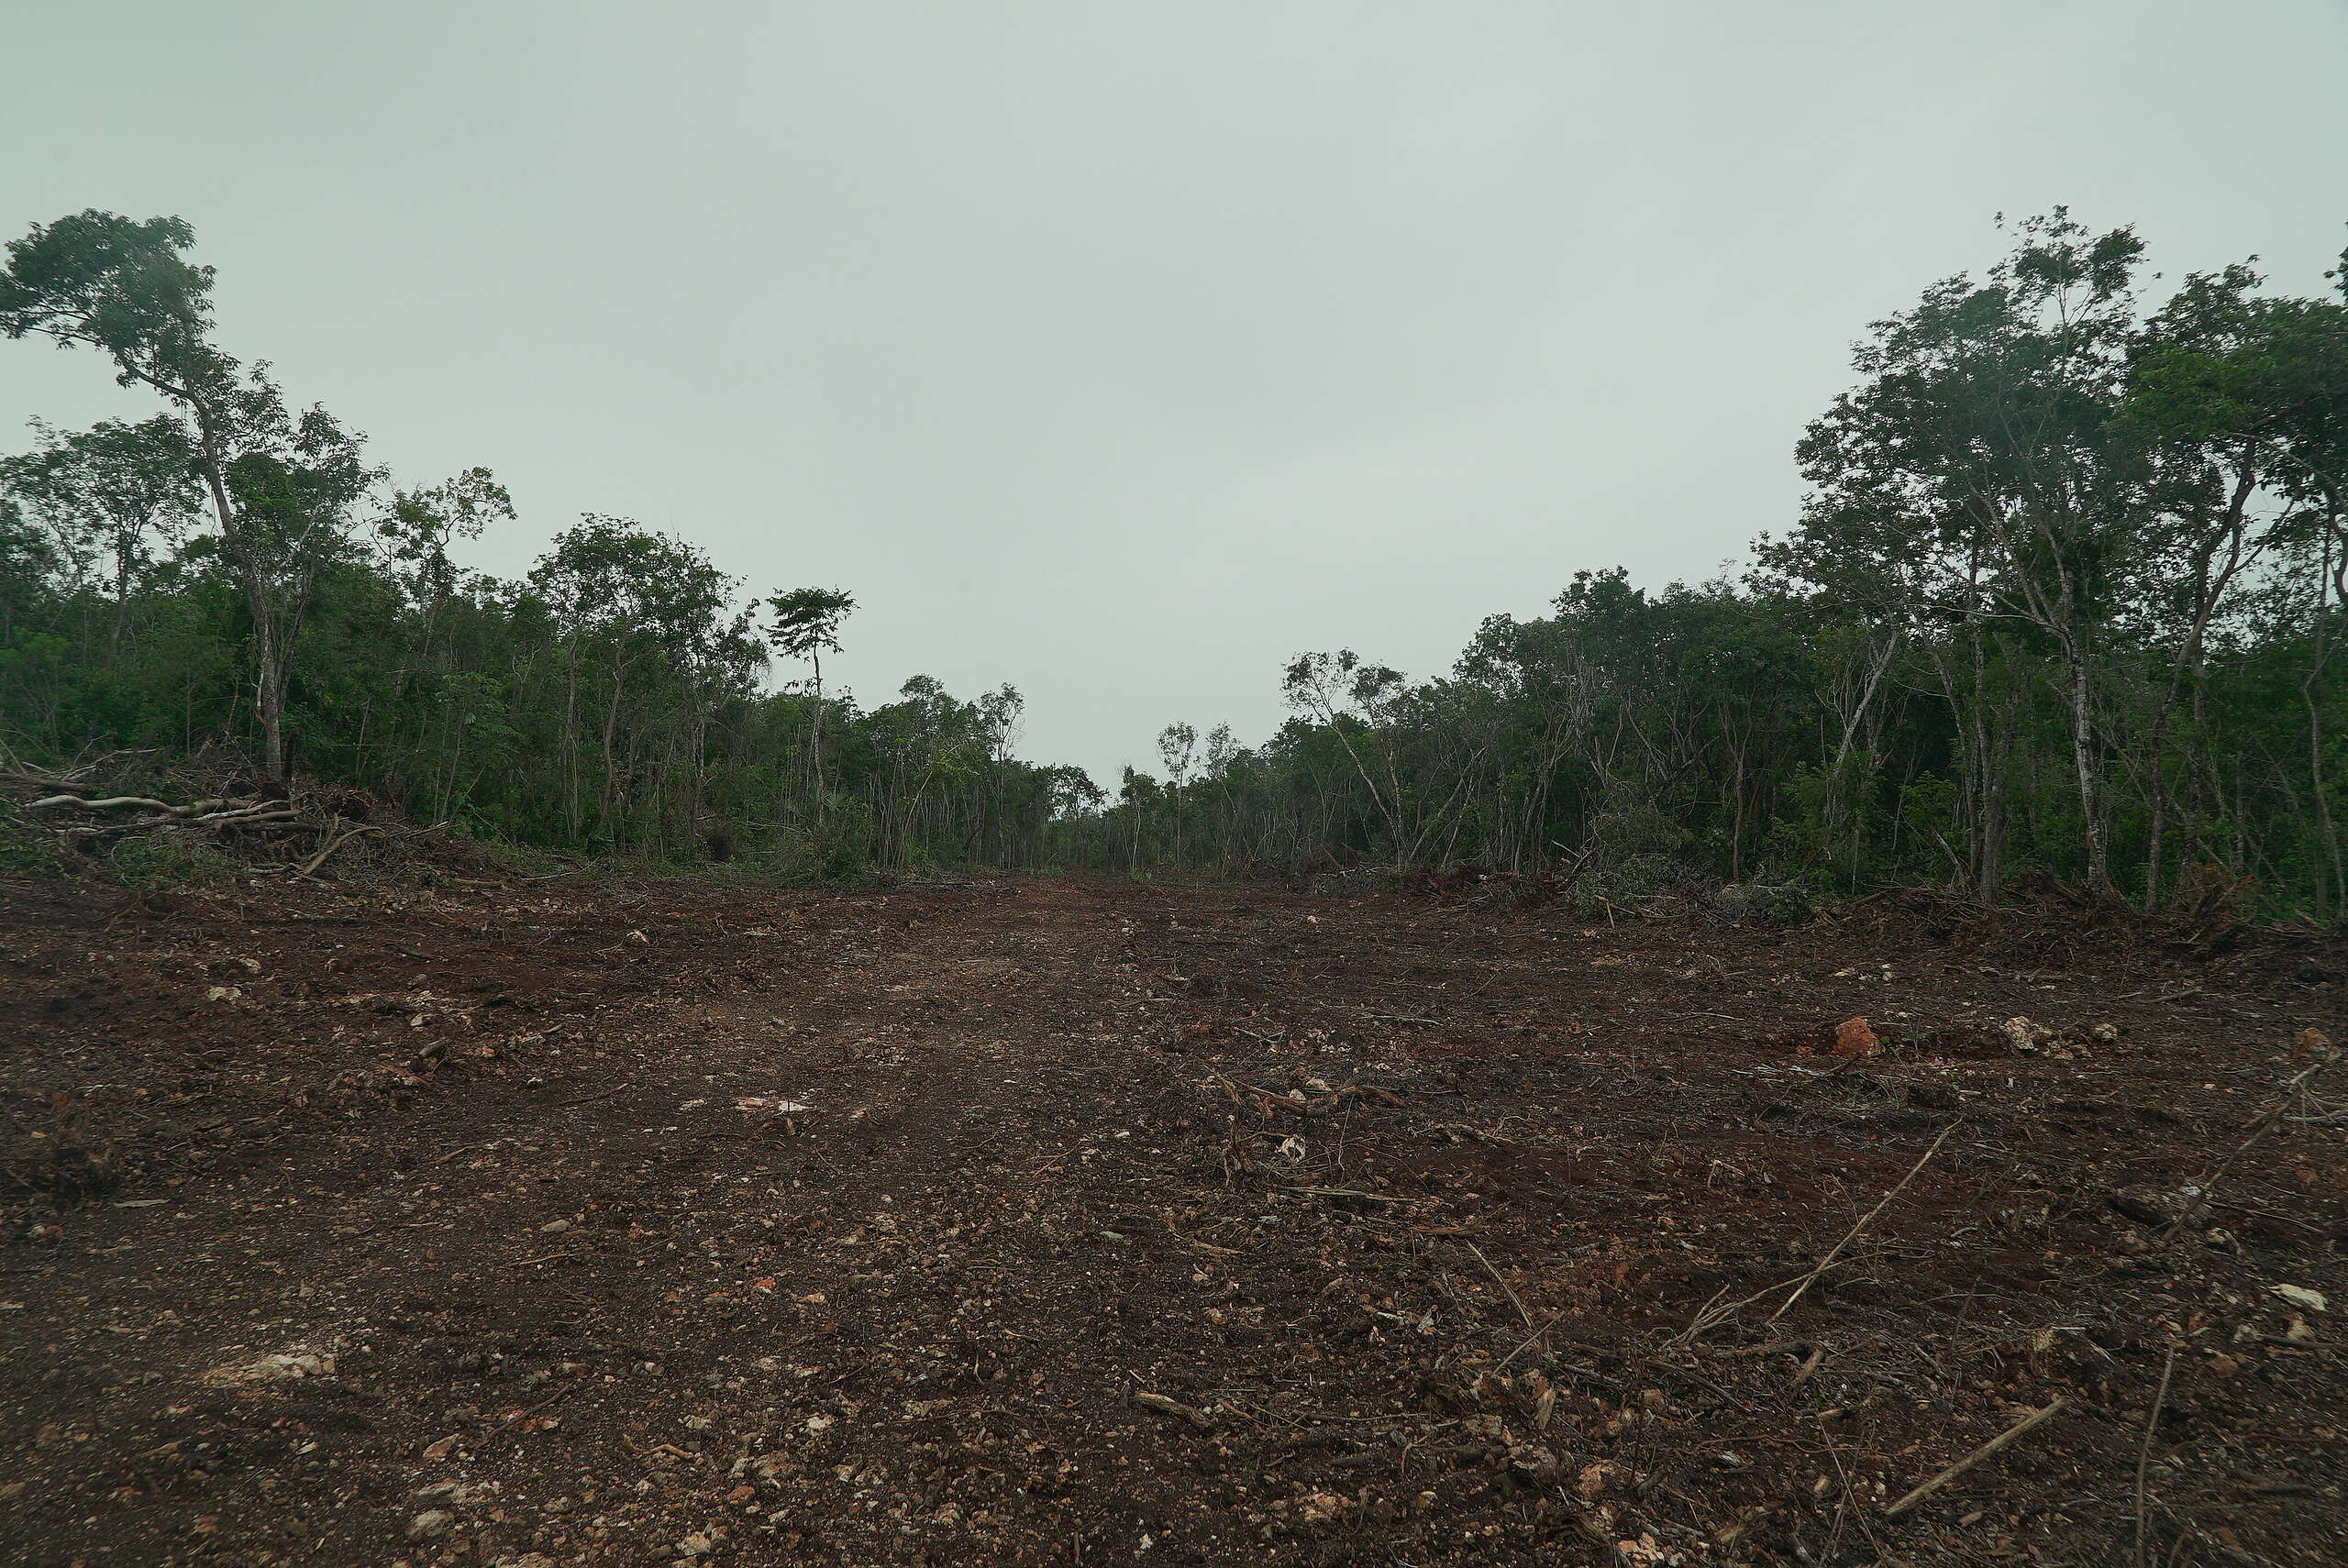 El tramo 6 del Tren Maya atraviesa la selva y con ella el hogar de cientos de especies que son desplazadas fuera de su hábitat natural, sin contar los miles de árboles que son deforestados para la construcción de las vías.